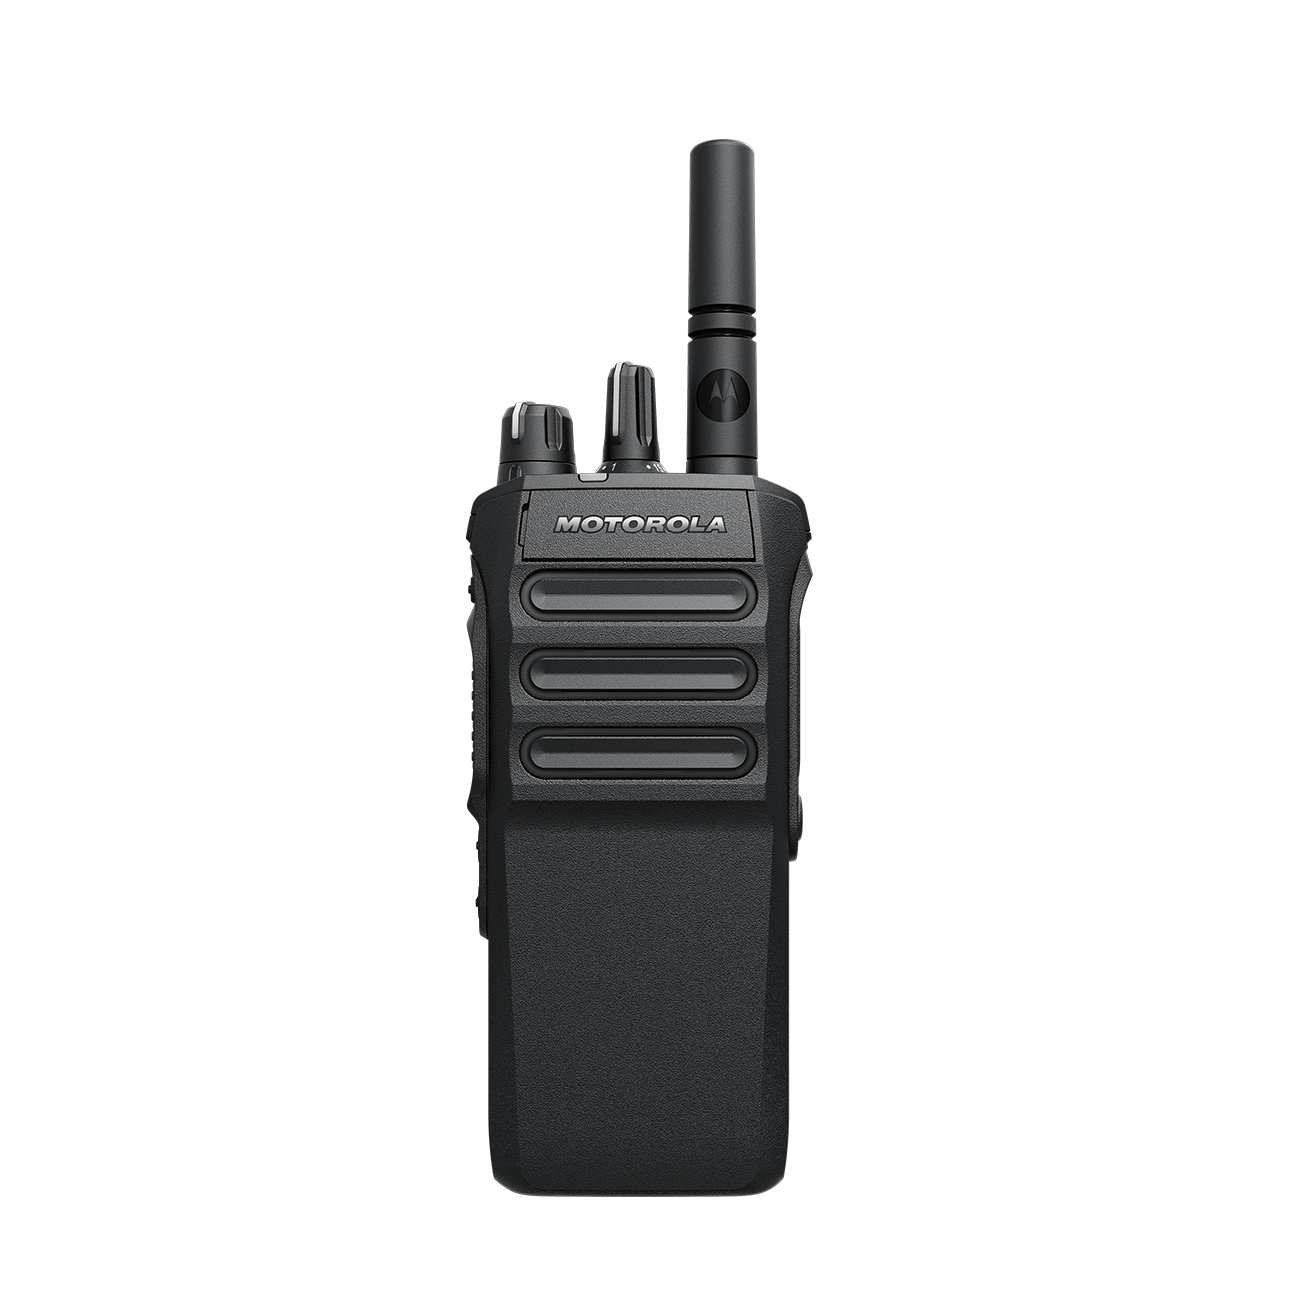 Портативная DMR радиостанция Motorola  Mototrbo R7 NKP Premium